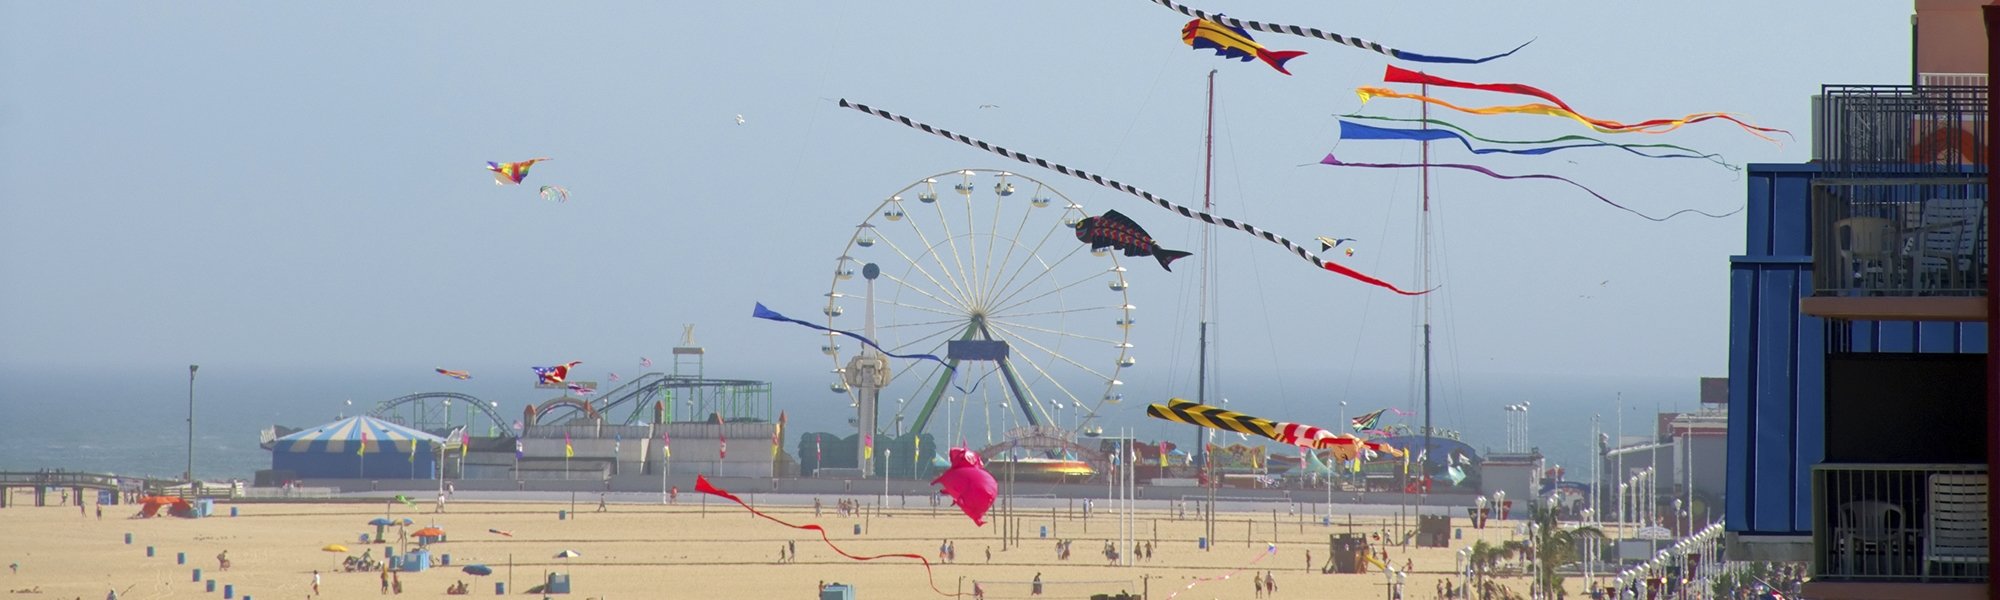 kites flying over ocean city md boardwalk 